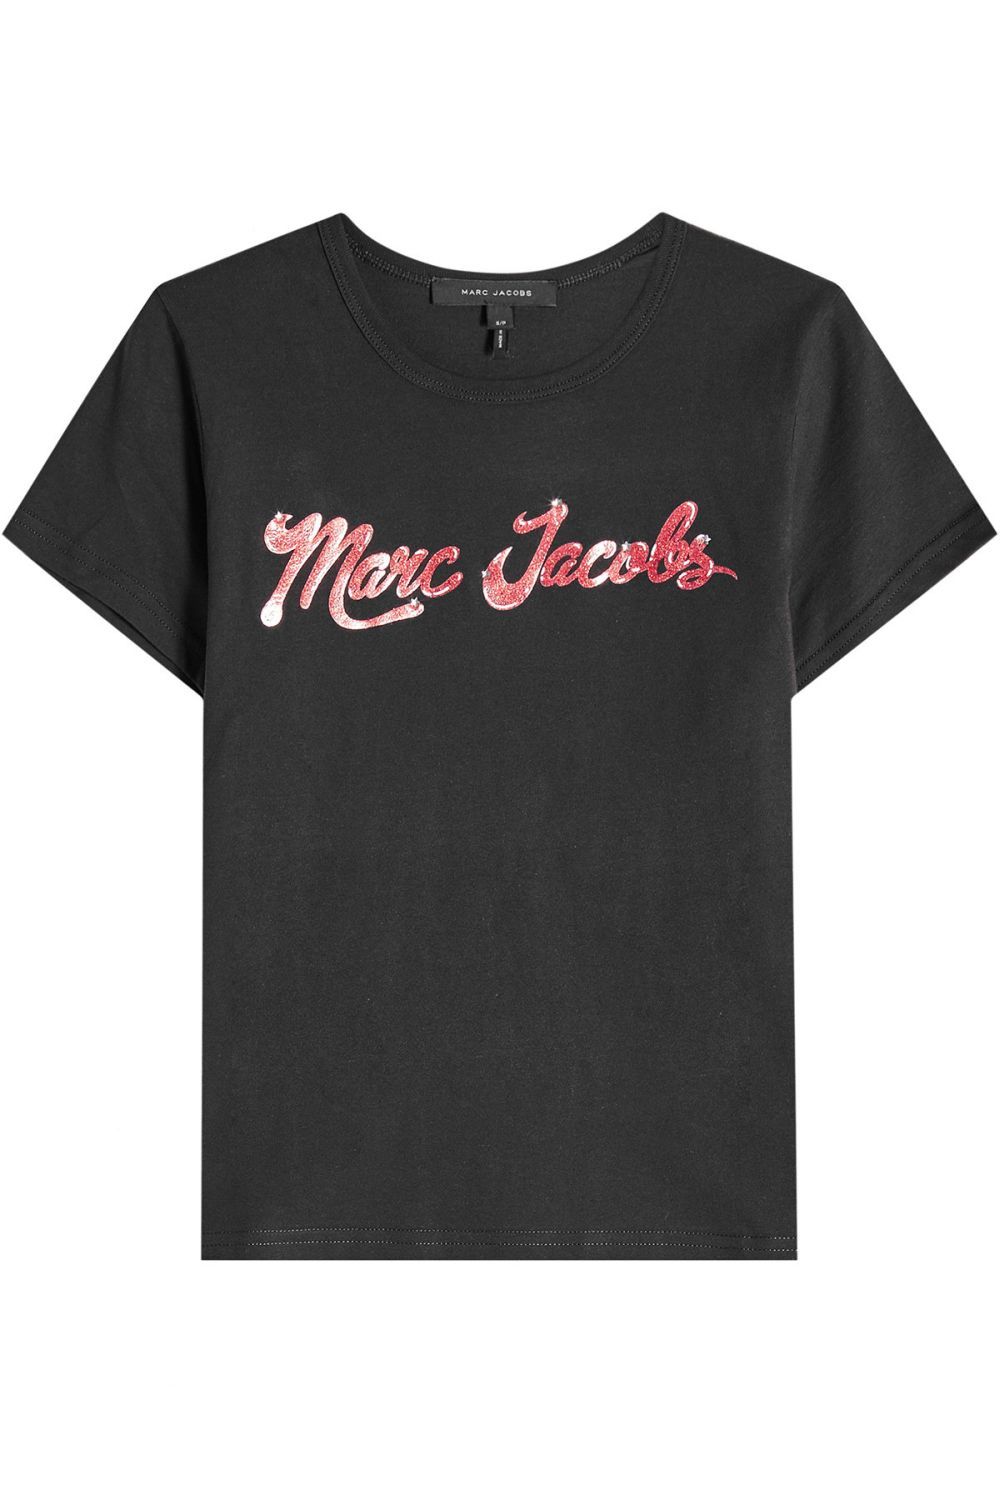 Camiseta con logo, Marc Jacobs (160 euros).